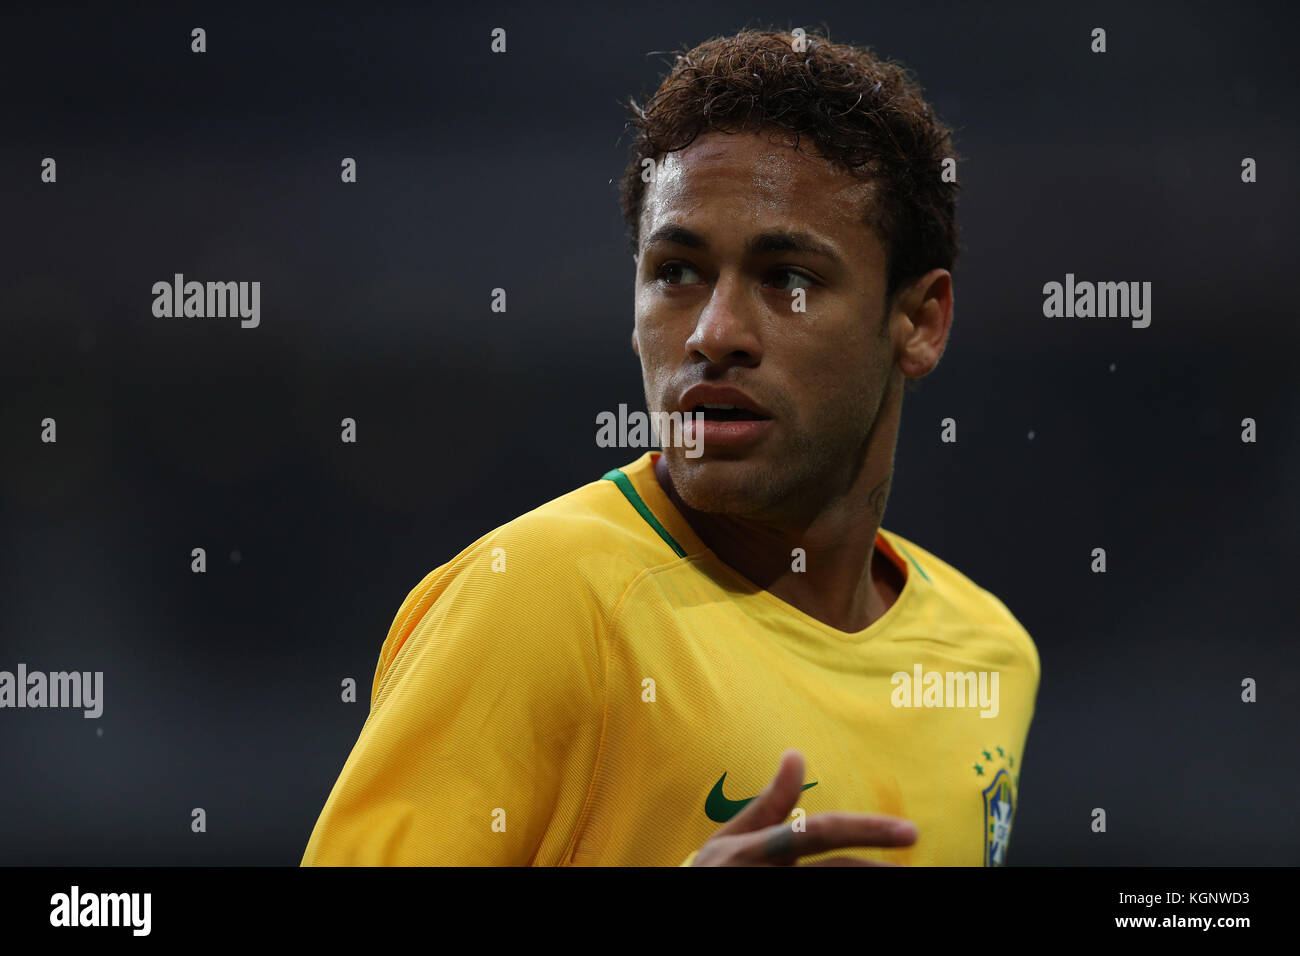 Neymar jr (Bra), 10. November 2017 - Fußball: neymar Jr in Stade Pierre-mauroy in Villeneuve-d'Ascq, Lille, Frankreich, Quelle: Lba/alamy leben Nachrichten Stockfoto